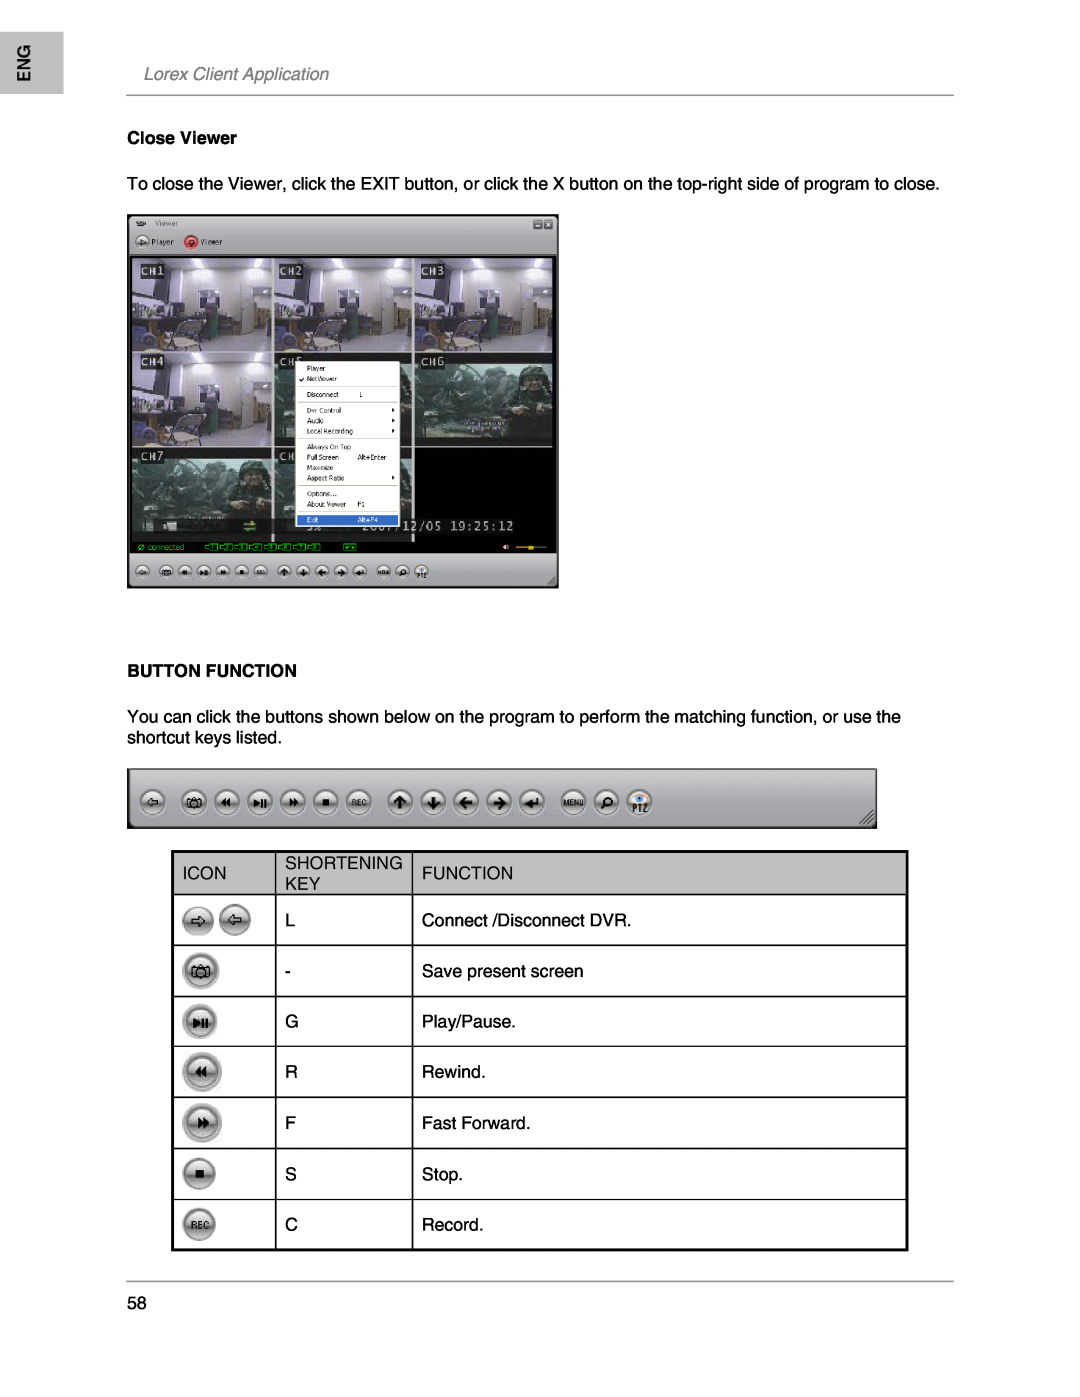 LOREX Technology L208, L204 instruction manual Lorex Client Application, Close Viewer, Button Function 